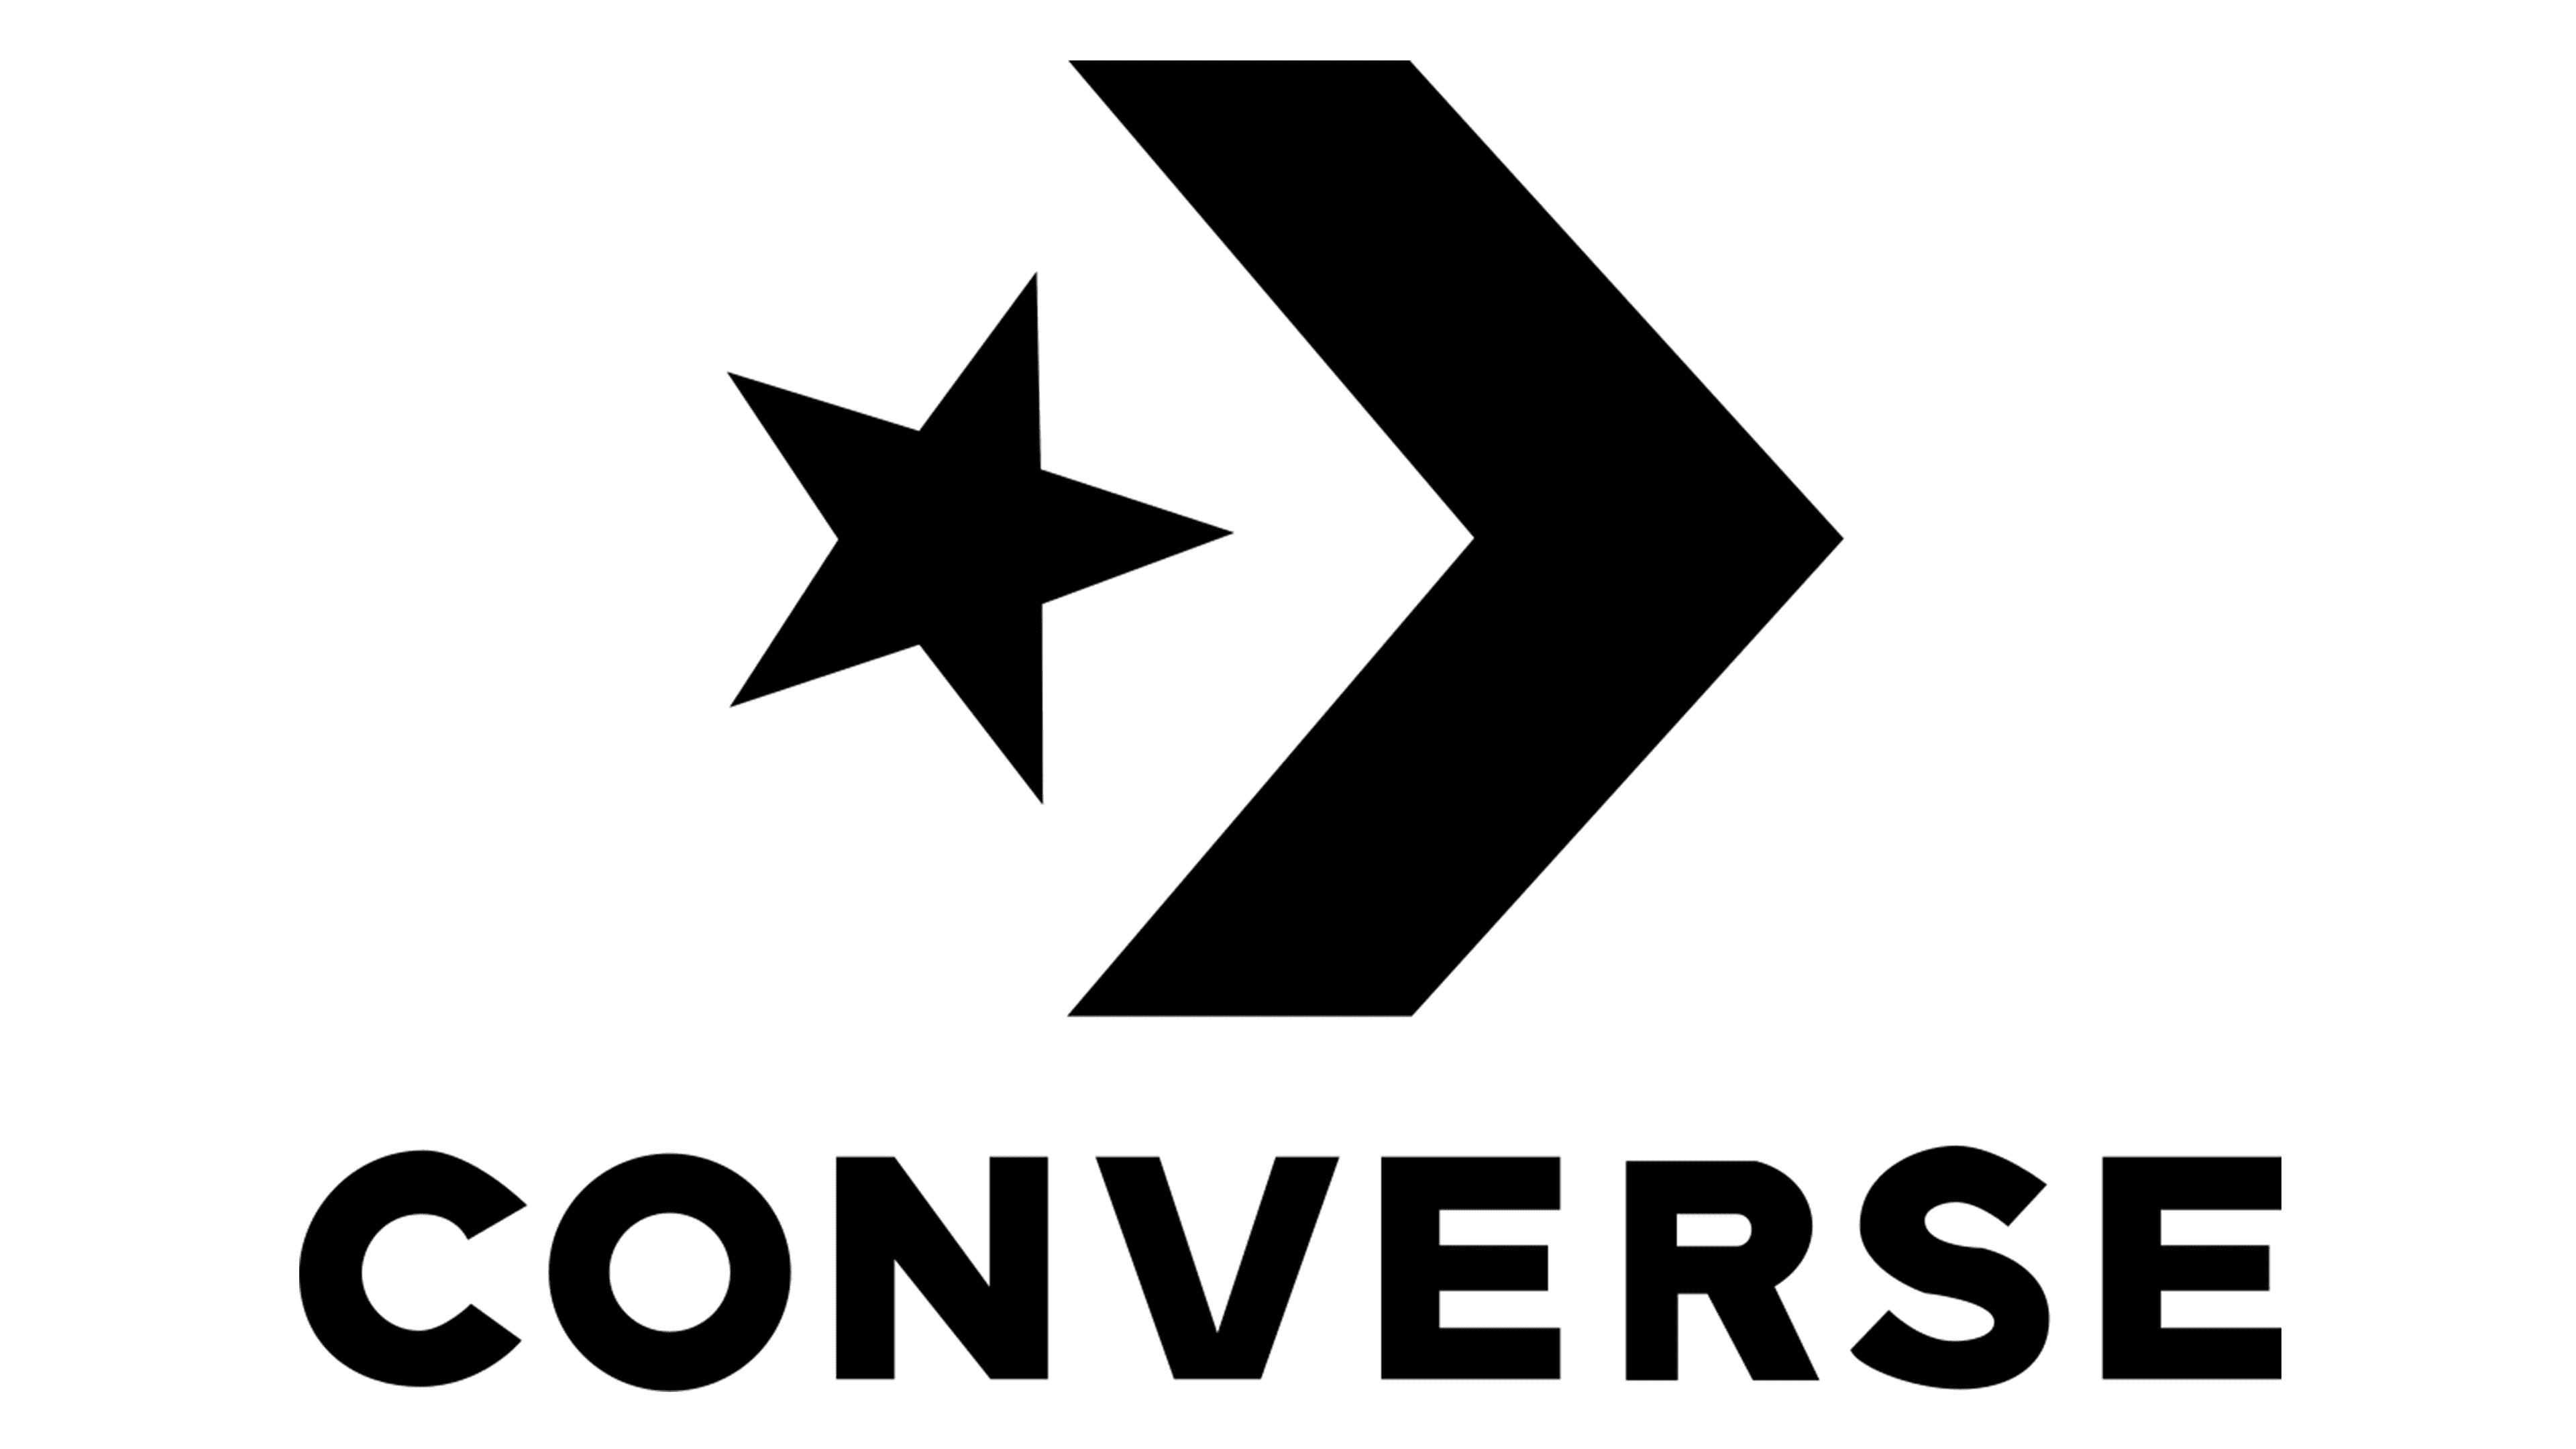 https://1000logos.net/wp-content/uploads/2021/11/logo-Converse.png